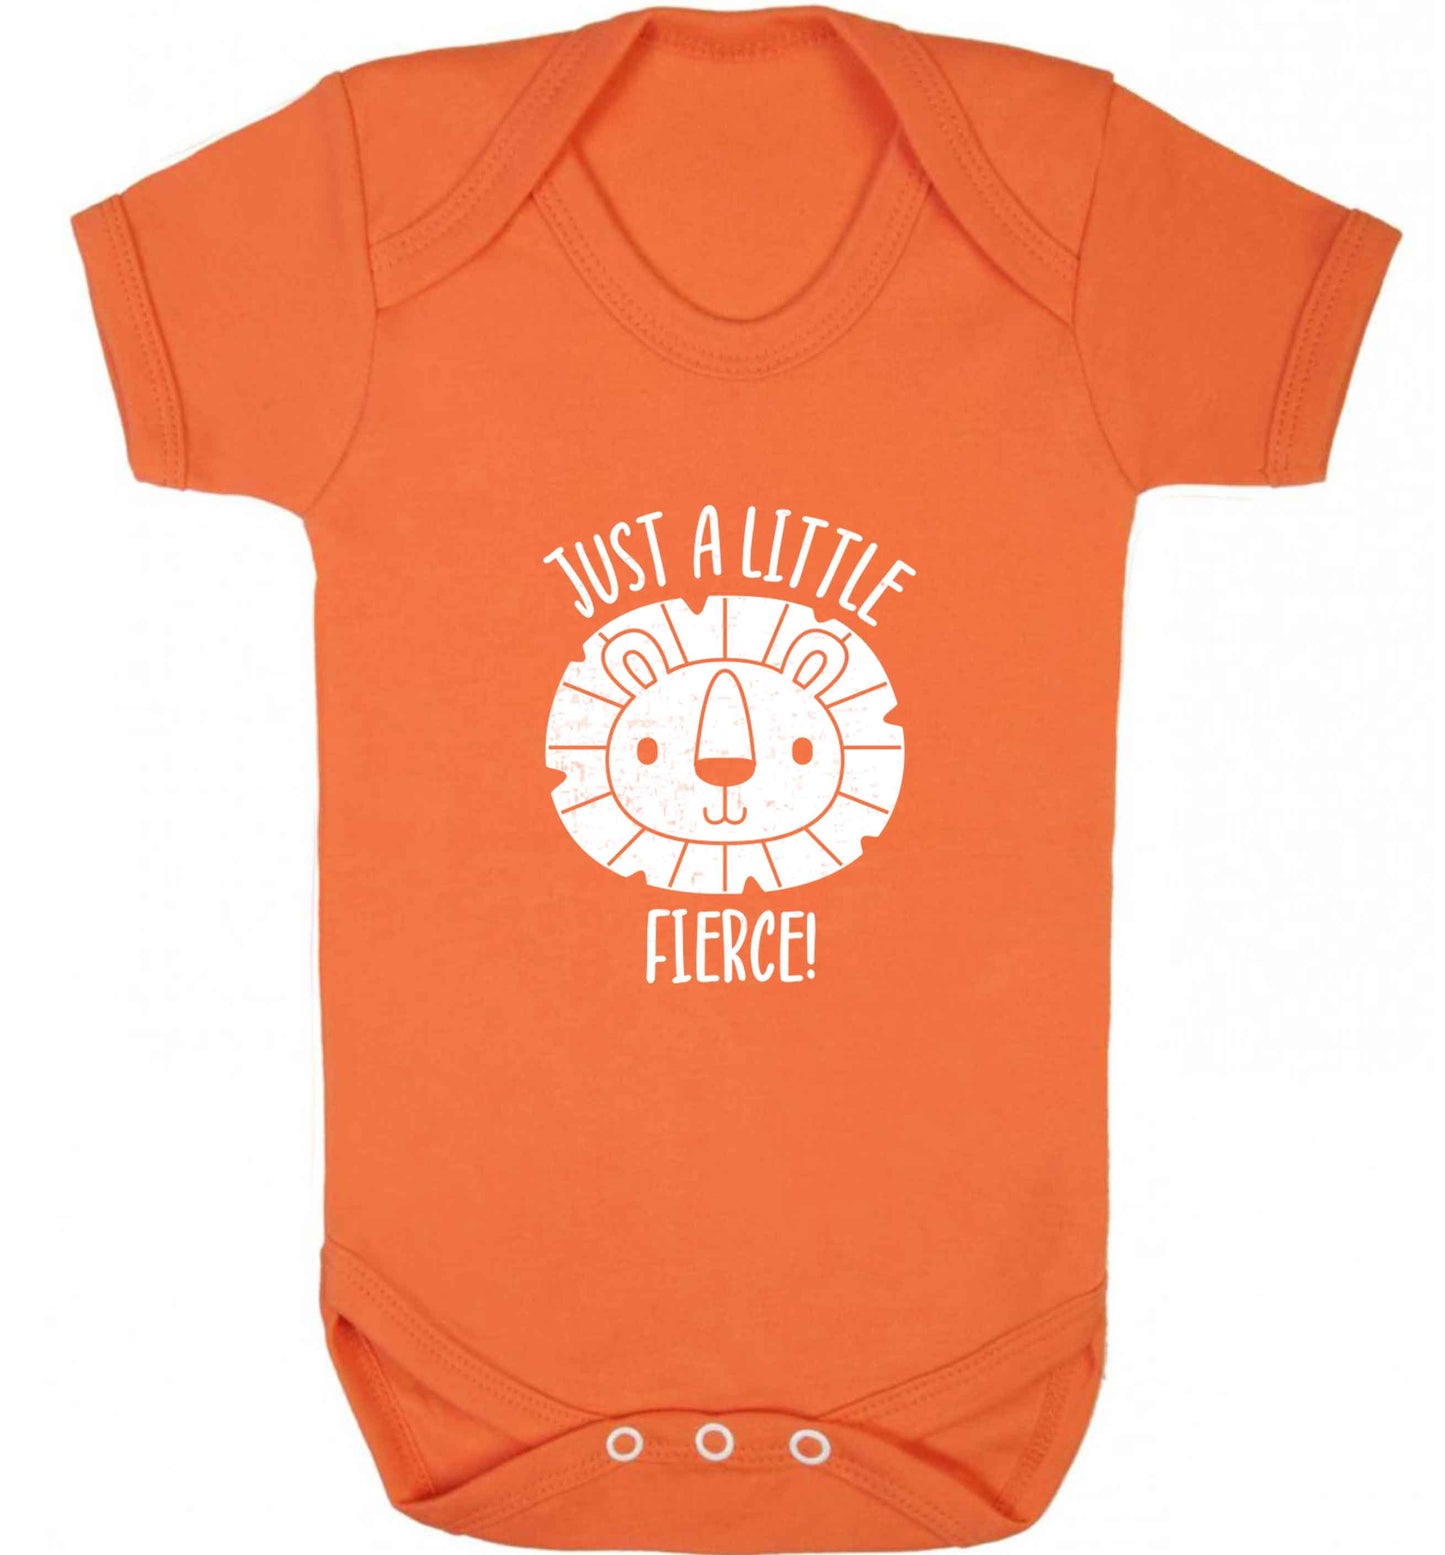 Just a little fierce baby vest orange 18-24 months